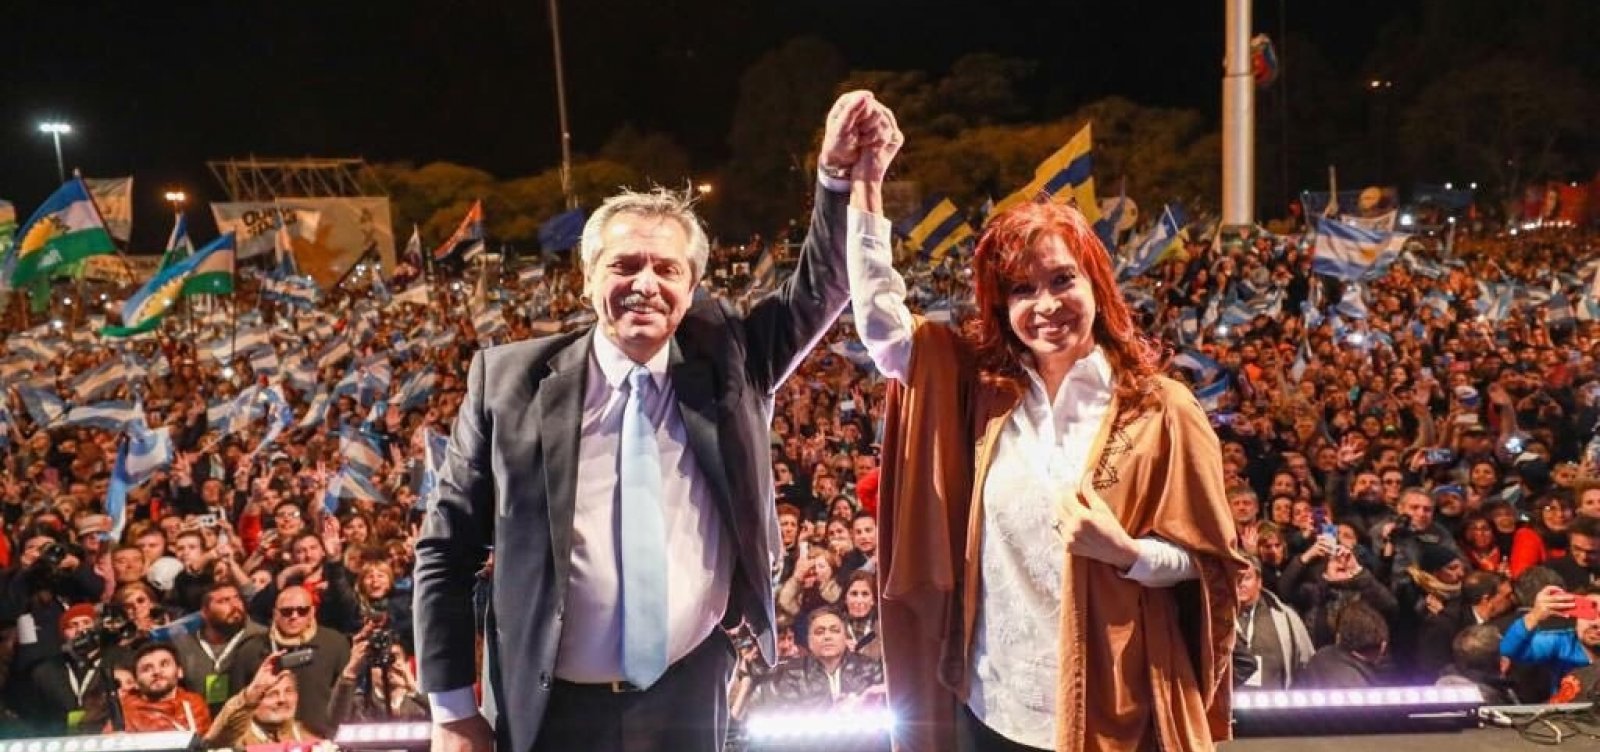 'Racista, misógino, violento', diz candidato da oposição argentina sobre Bolsonaro